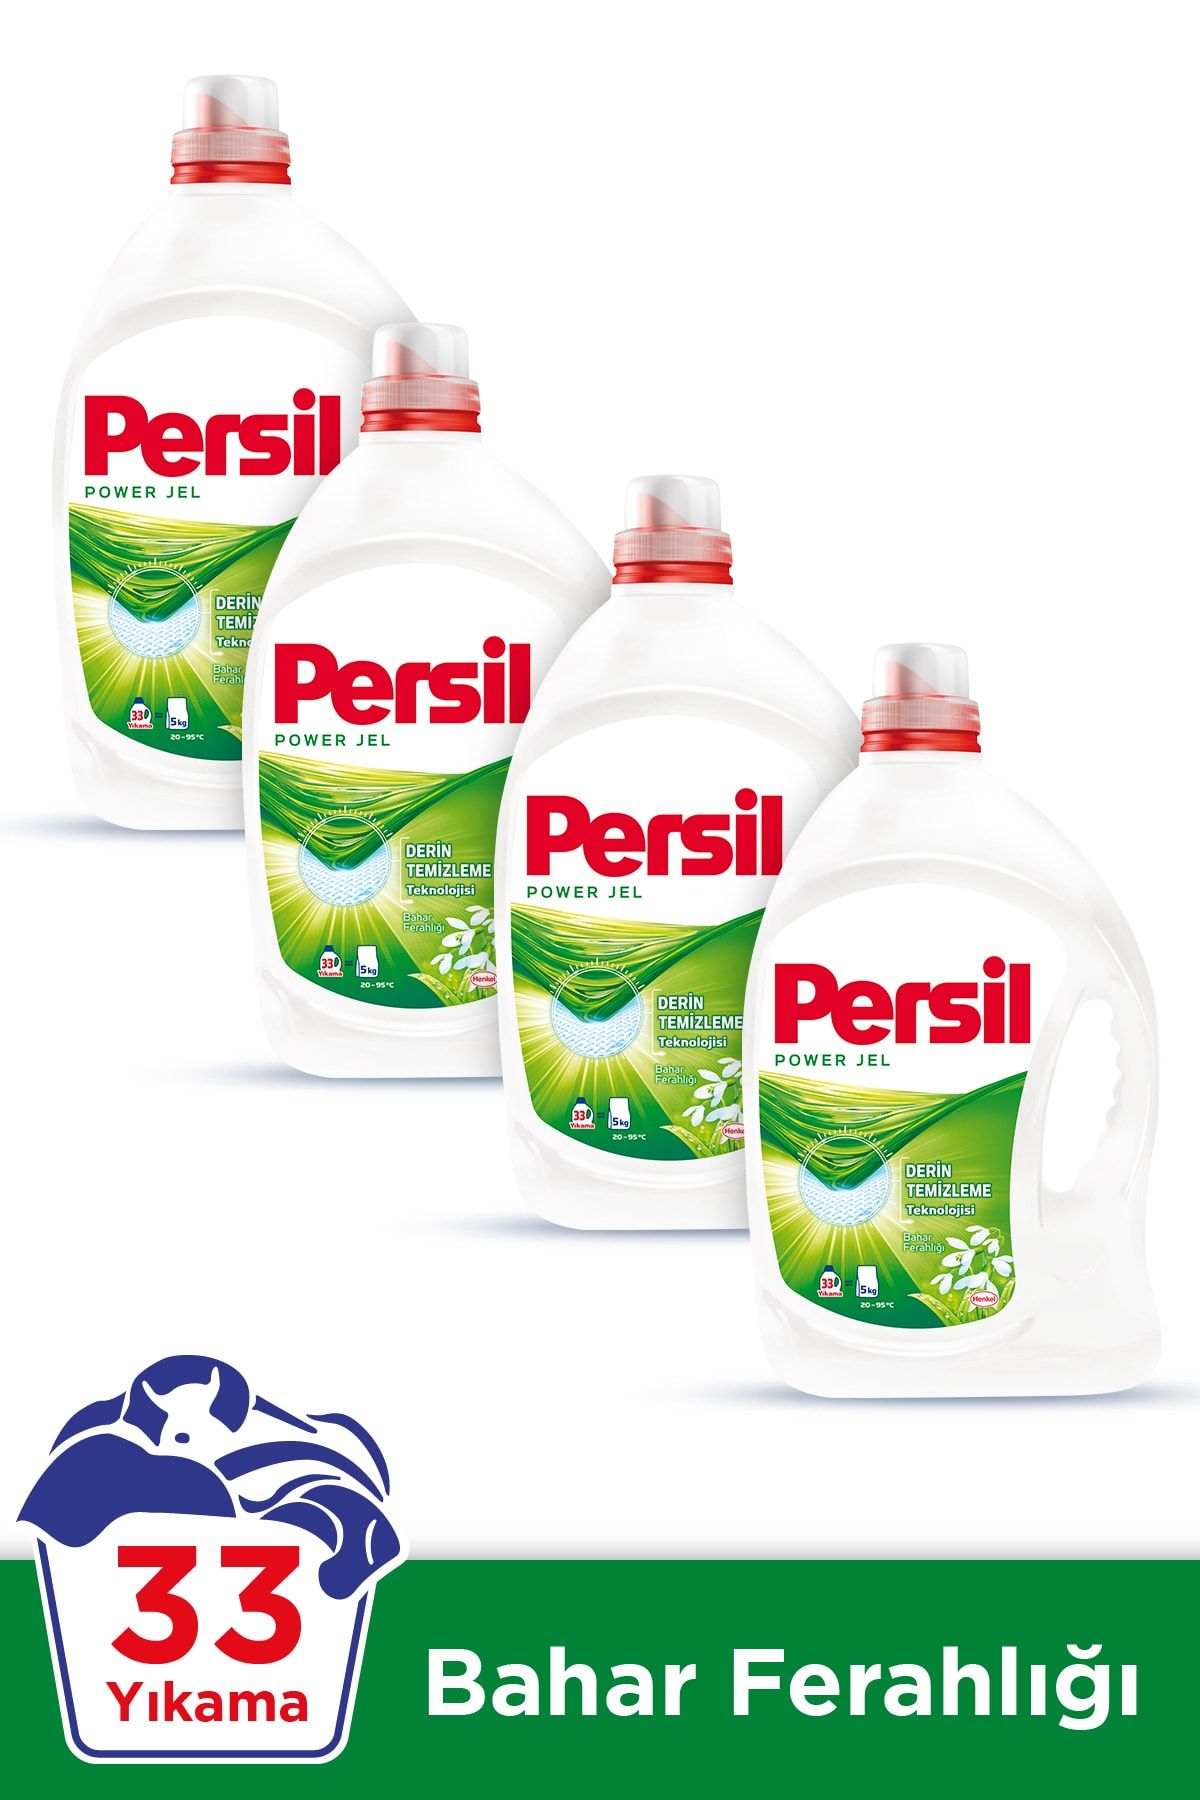 Persil Power Jel Sıvı Çamaşır Deterjanı Bahar Ferahlığı 33 Yıkama 4'lü Set  30000328